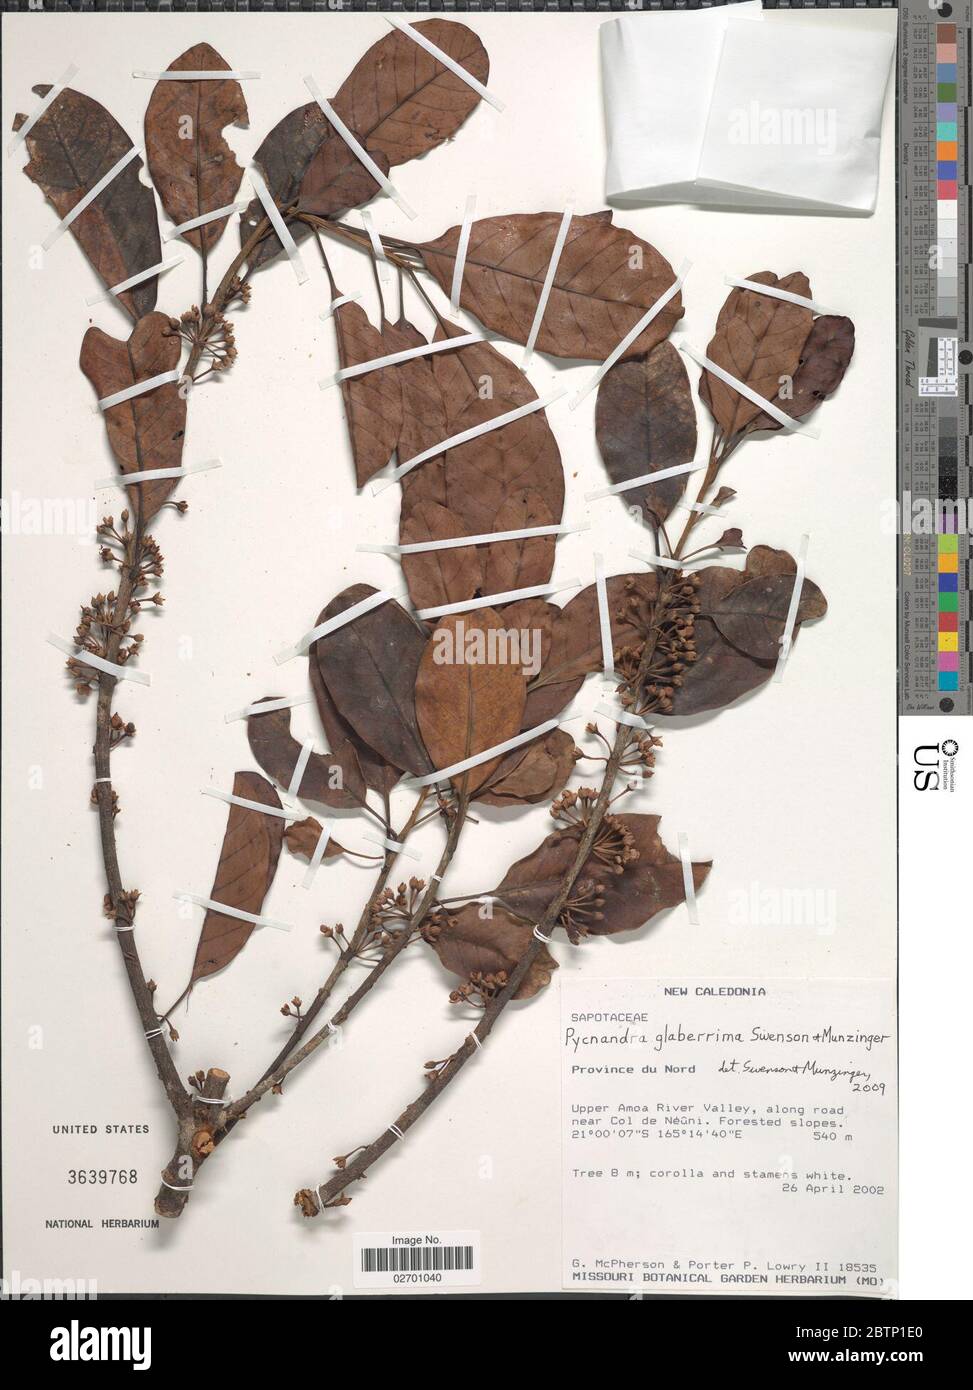 Pycnandra glaberrima Swenson Munzinger. Stock Photo